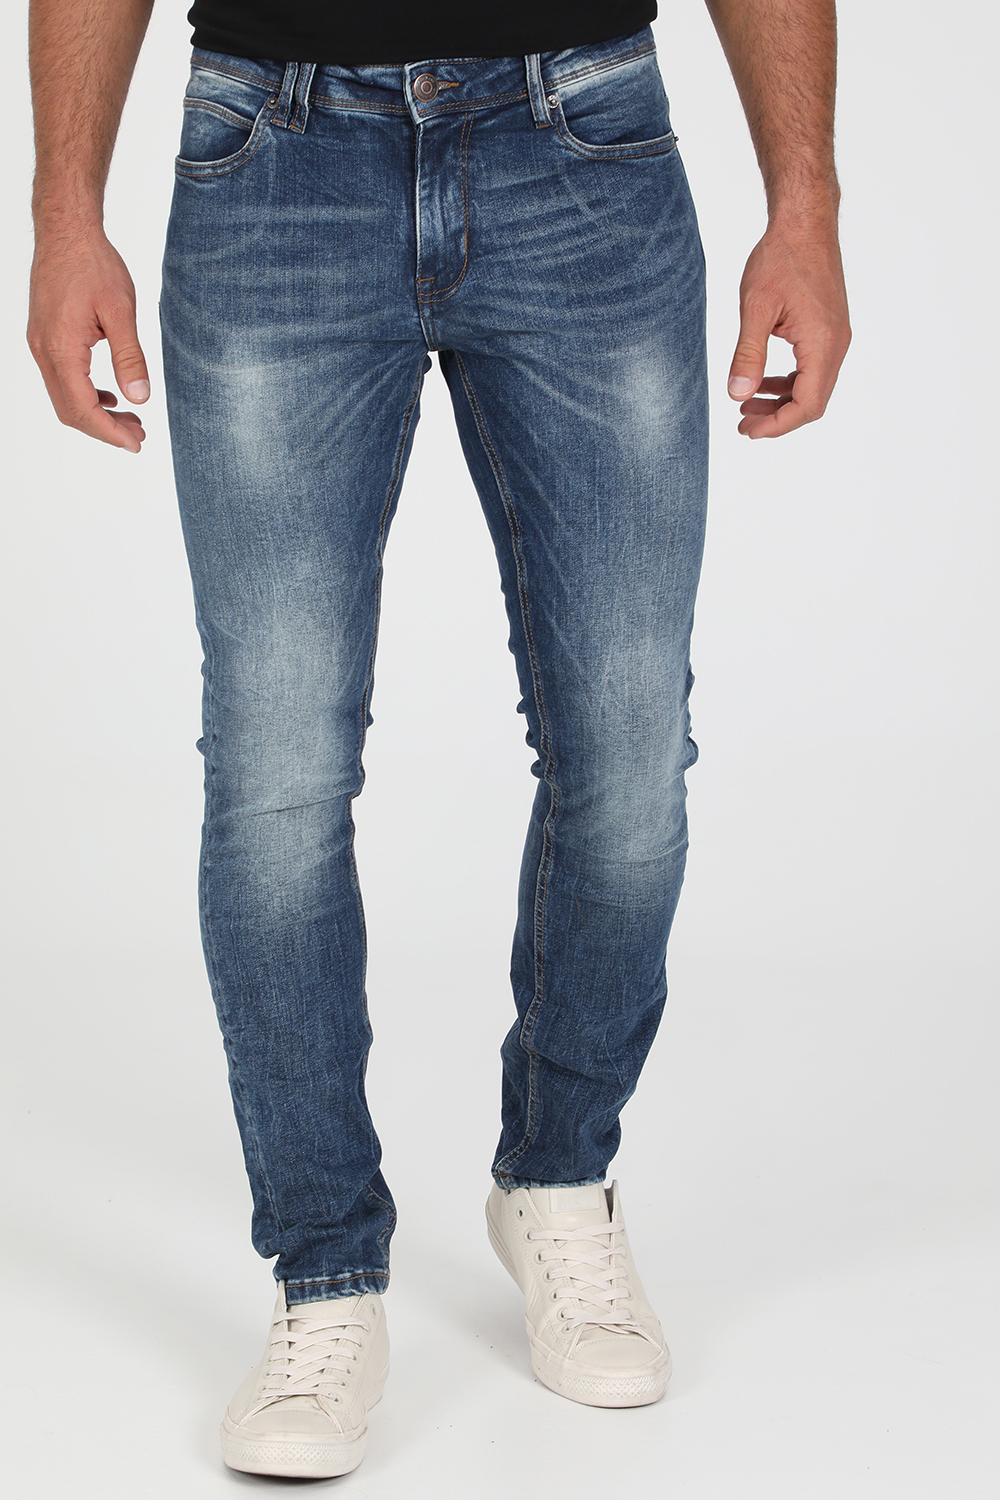 Ανδρικά/Ρούχα/Τζίν/Straight GAUDI - Ανδρικό jean παντελόνι GAUDI μπλε